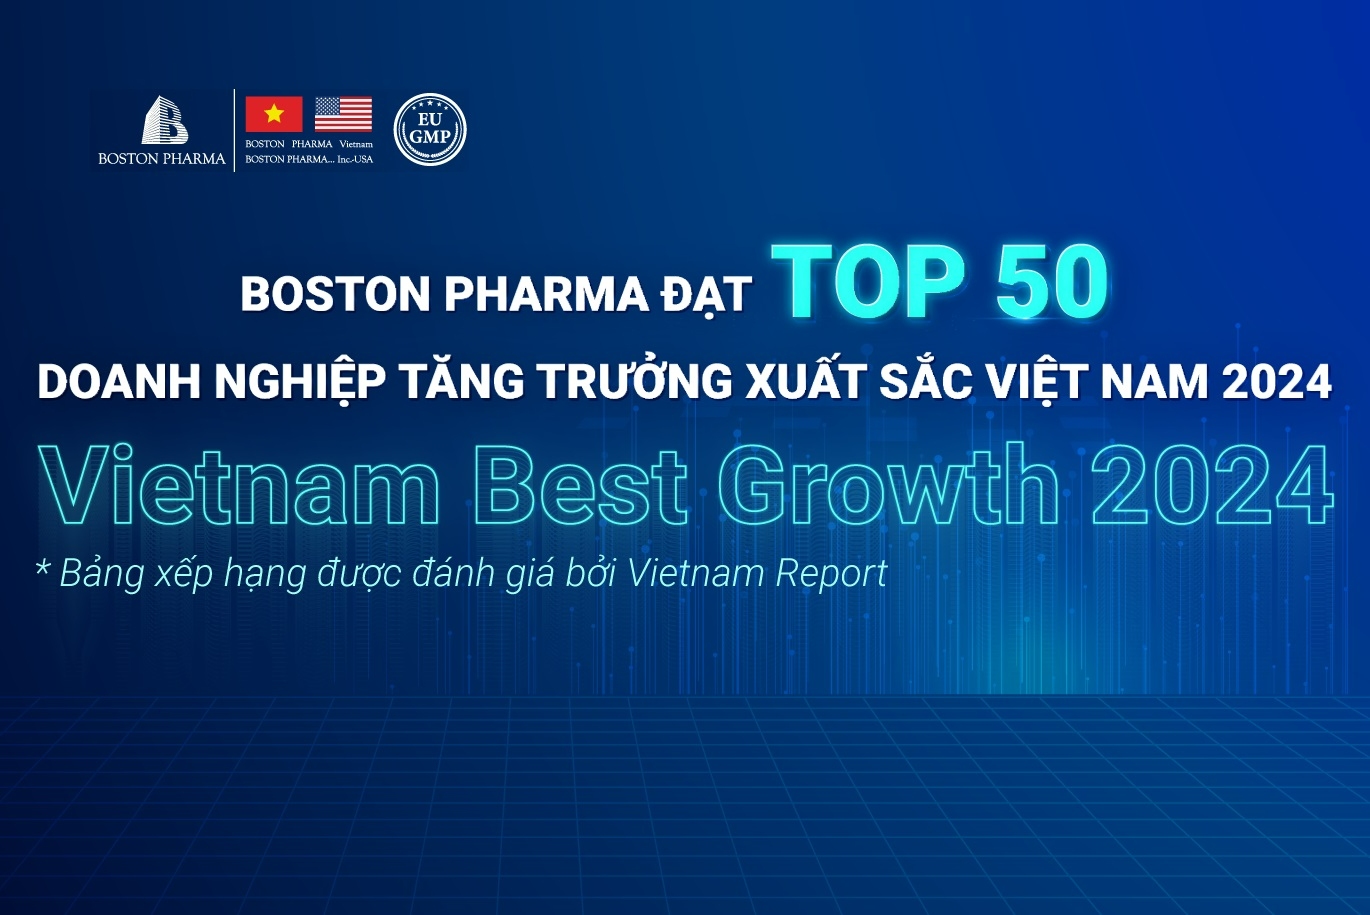 Boston Pharma vinh dự đạt “Top 50 doanh nghiệp tăng trưởng xuất sắc Việt Nam 2024”